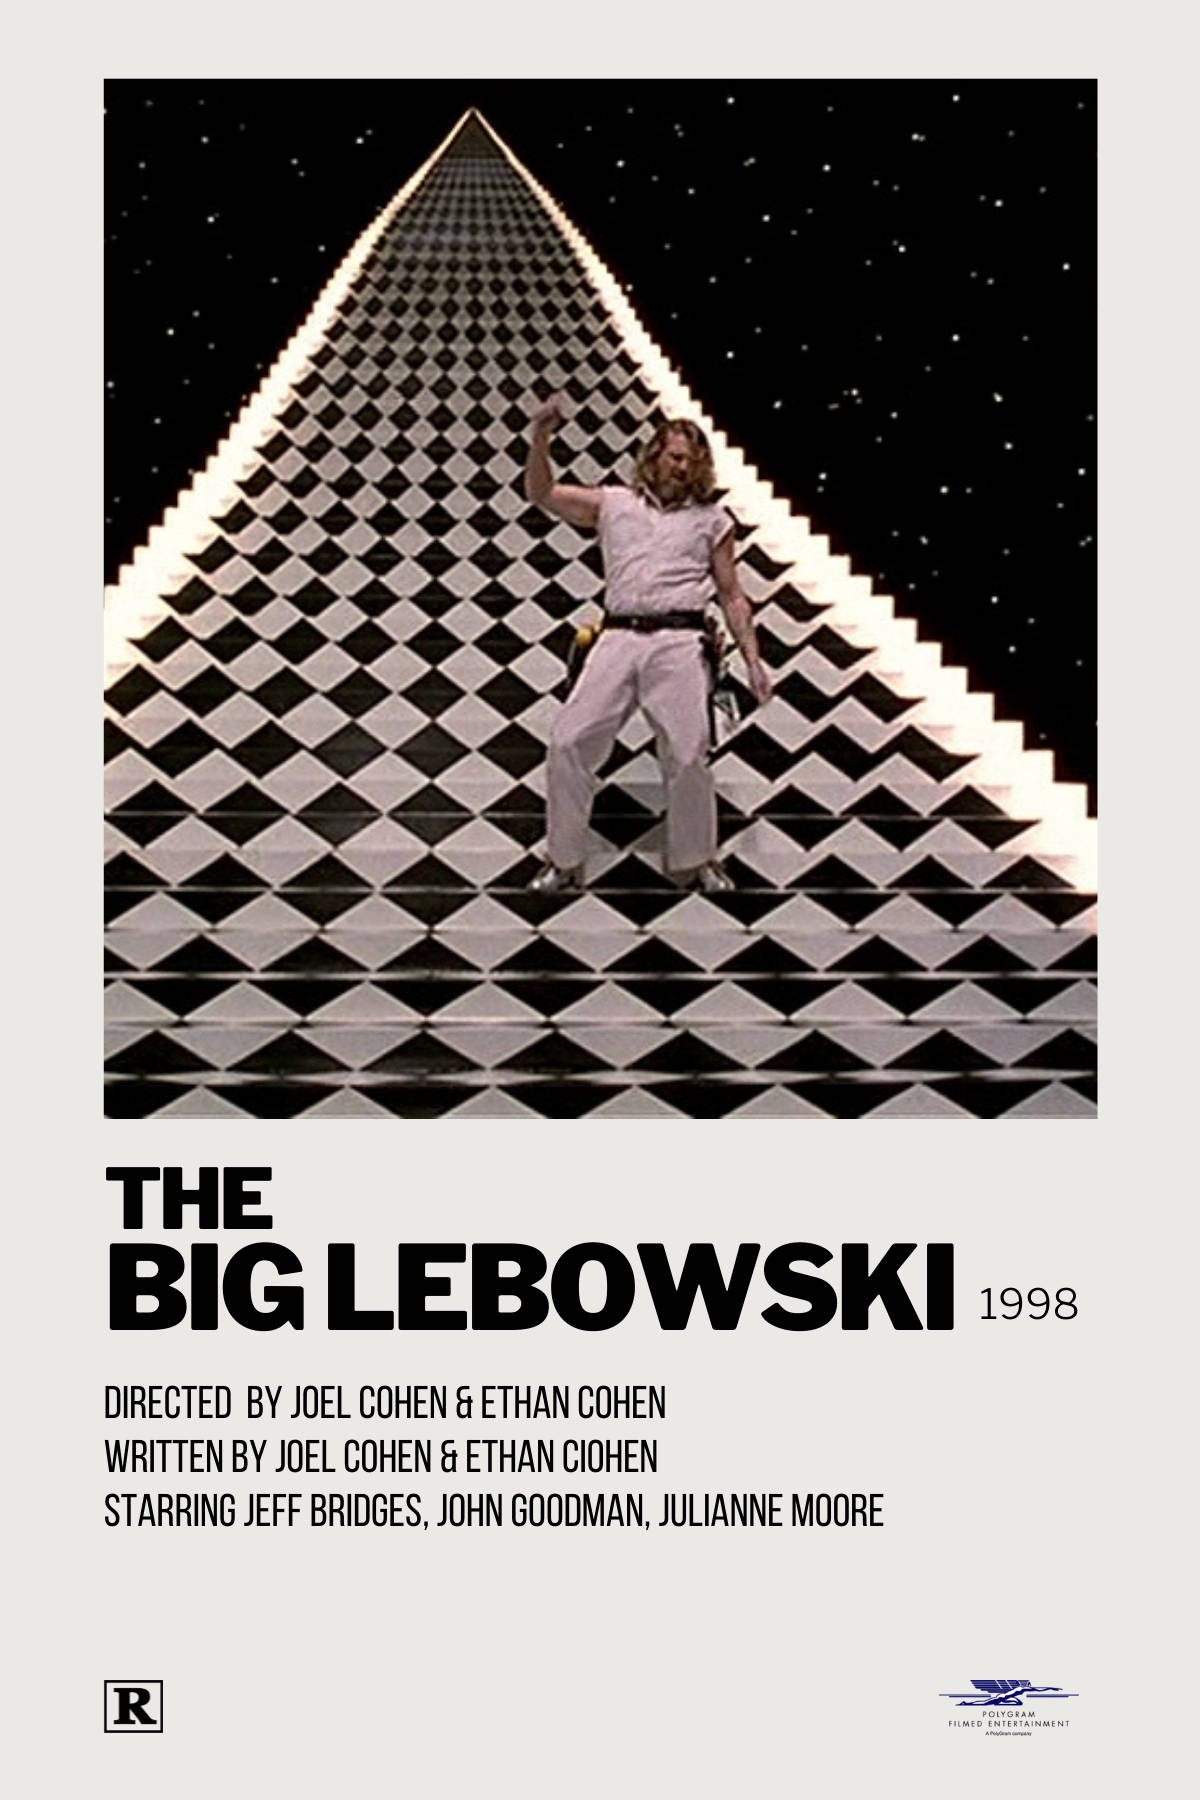 The Big Lebowski 1998 Trippy Poster Art Wallpaper